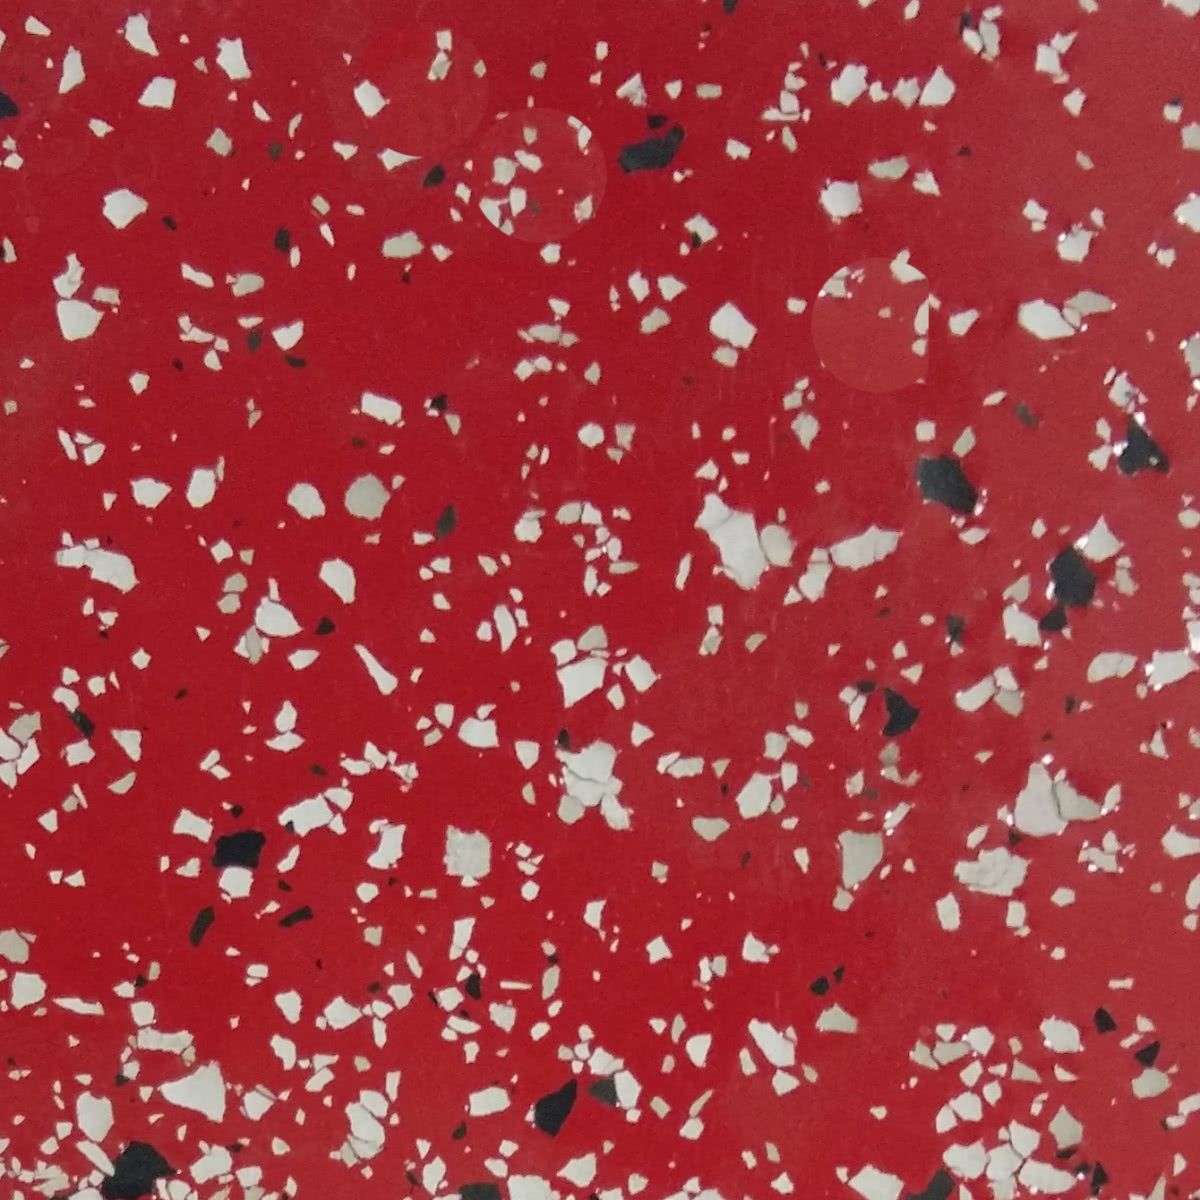 Красный наливной эпоксидный пол БИРСС МУЛЬТИПОЛ с декором флоками